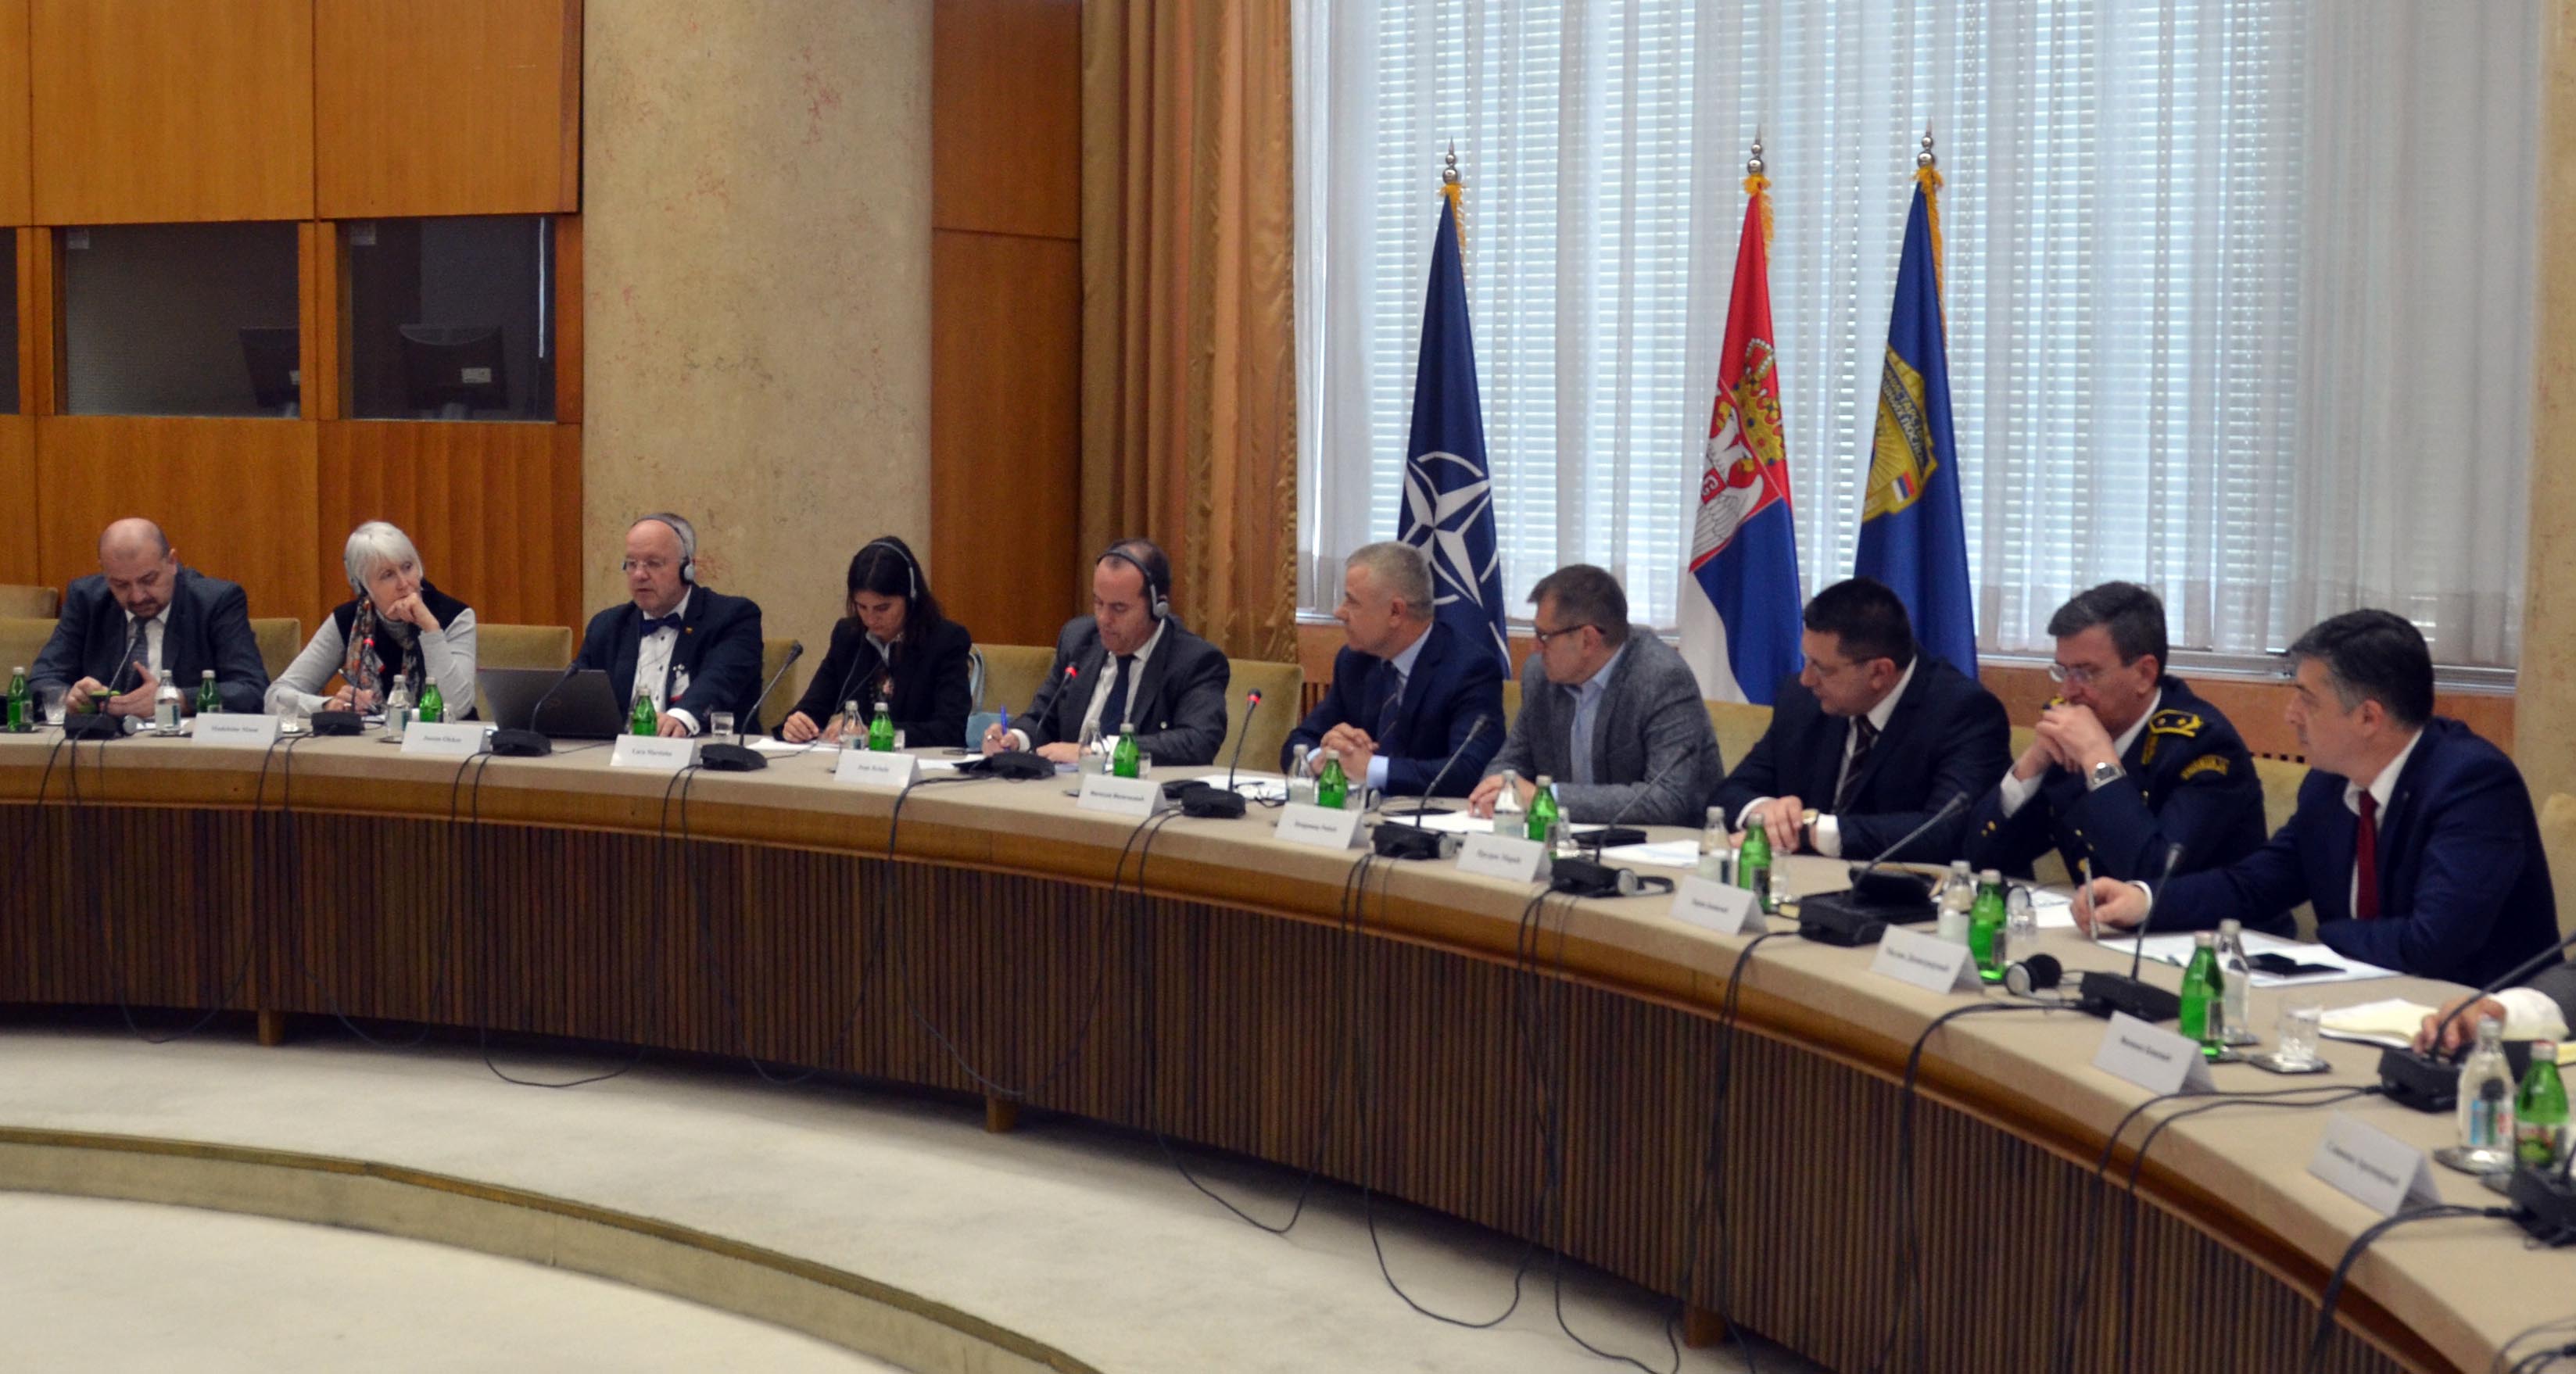 Државни секретар Миличковић разговарао са делегацијом Парламентарне скупштине НАТО